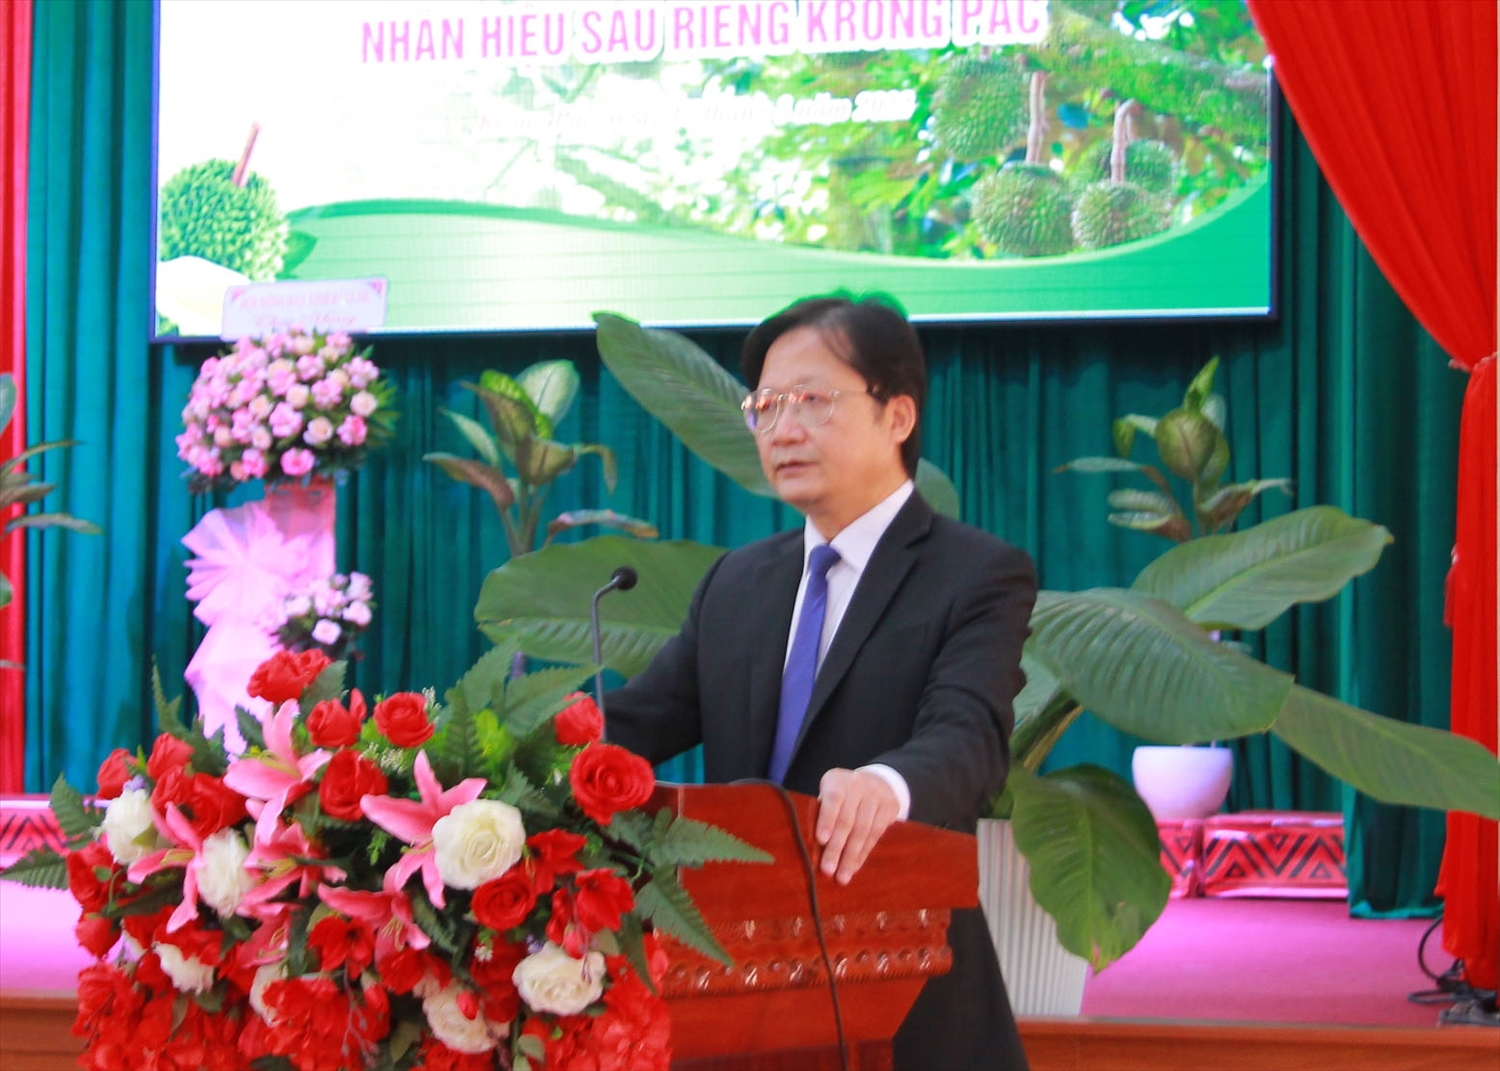 Ông Nguyễn Hoài Dương, Giám đốc Sở NN&PTNT phát biểu tại buổi lễ